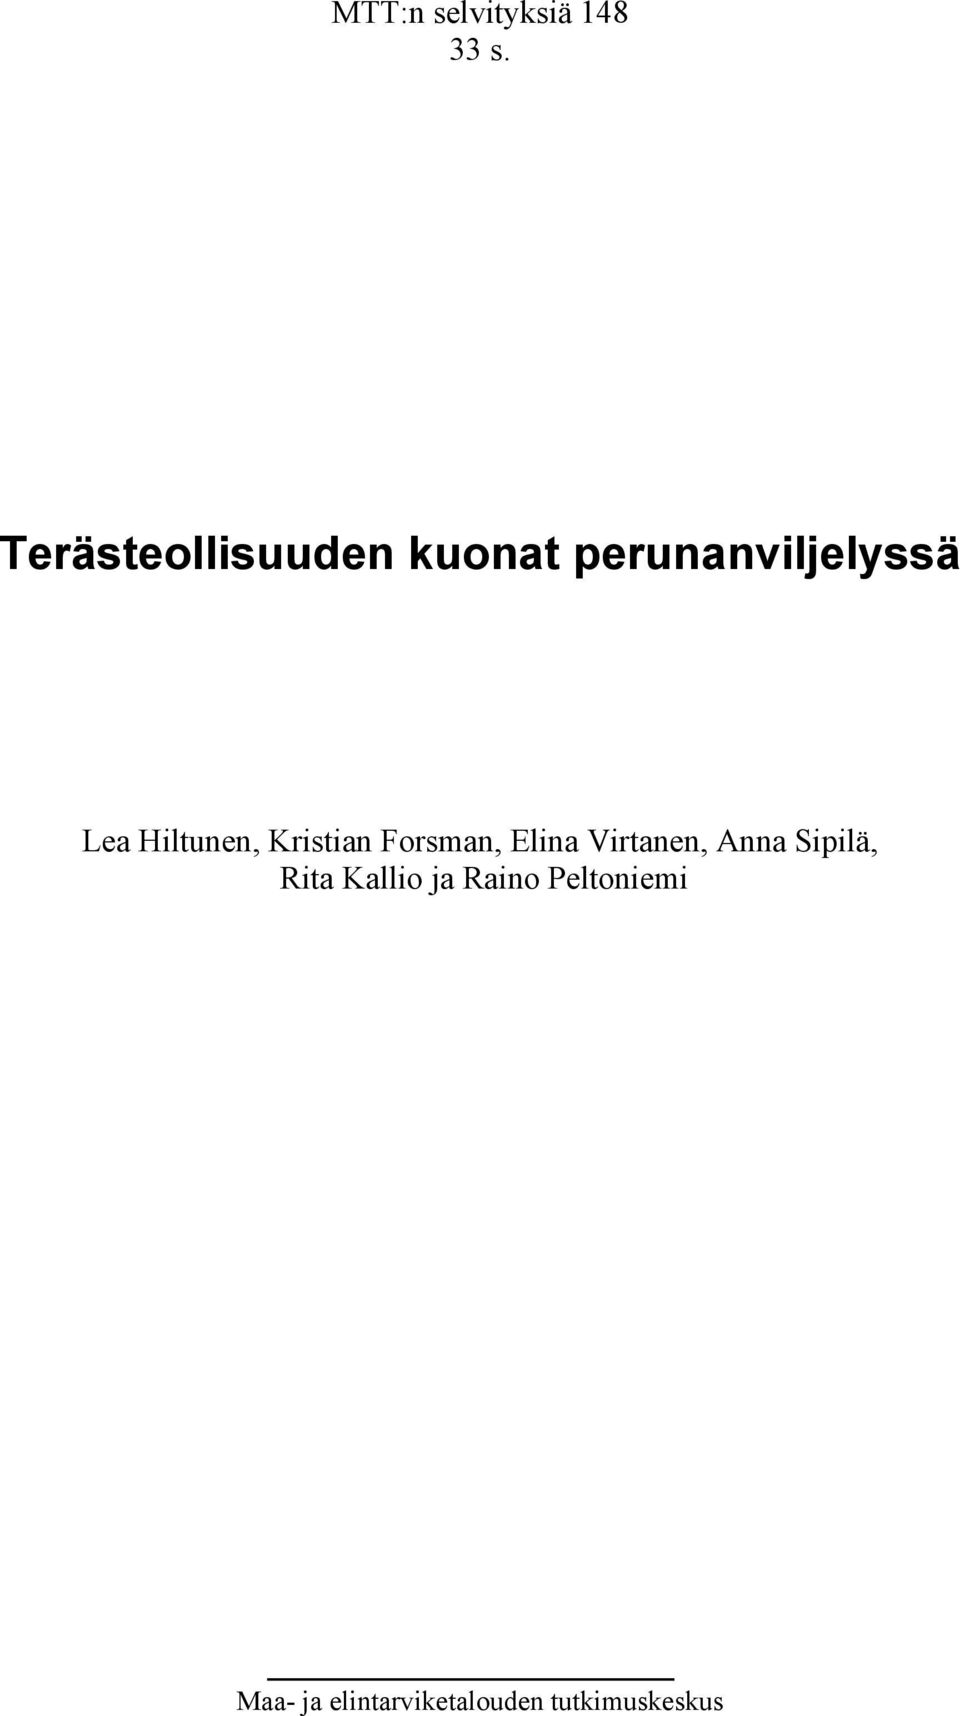 Hiltunen, Kristian Forsman, Elina Virtanen, Anna